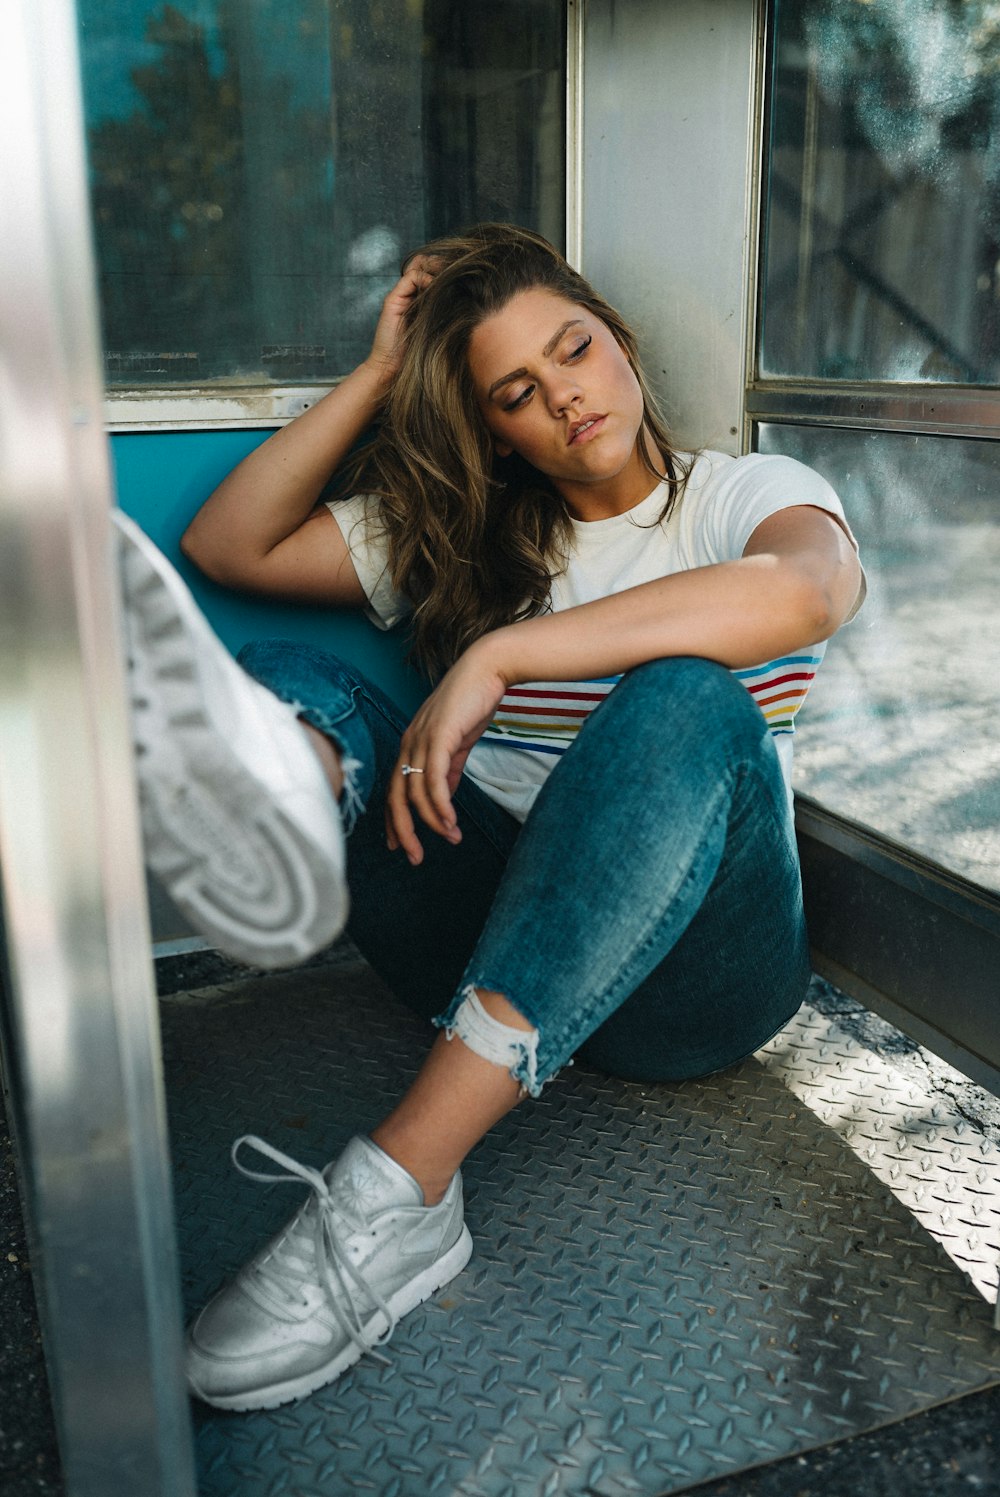 Mujer con camiseta blanca y jeans de mezclilla azul sentada en el asiento del tren